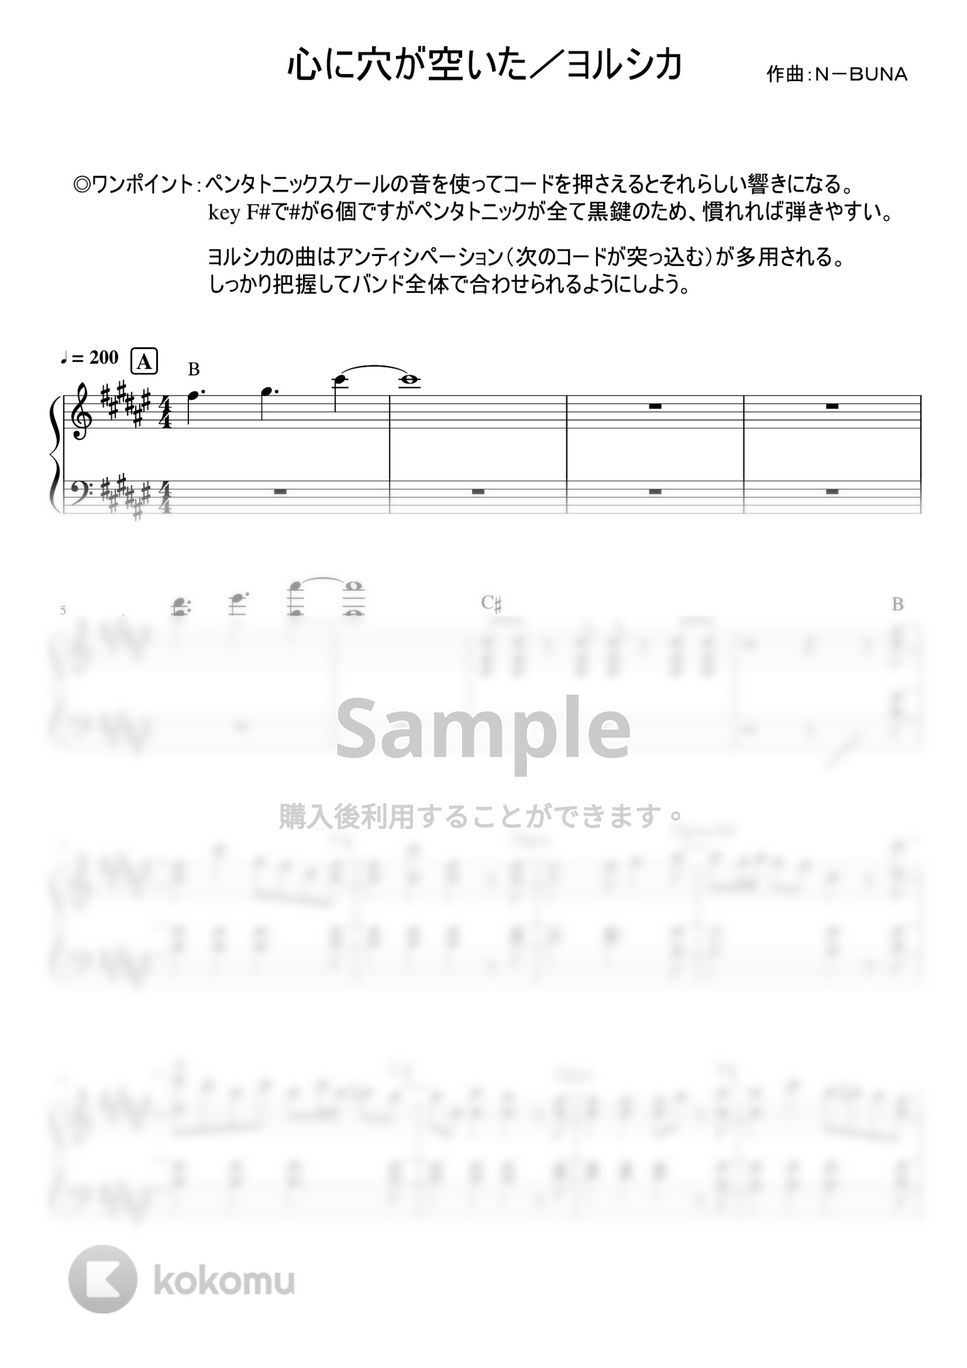 ヨルシカ - 心に穴が空いた (ピアノパート) by mame